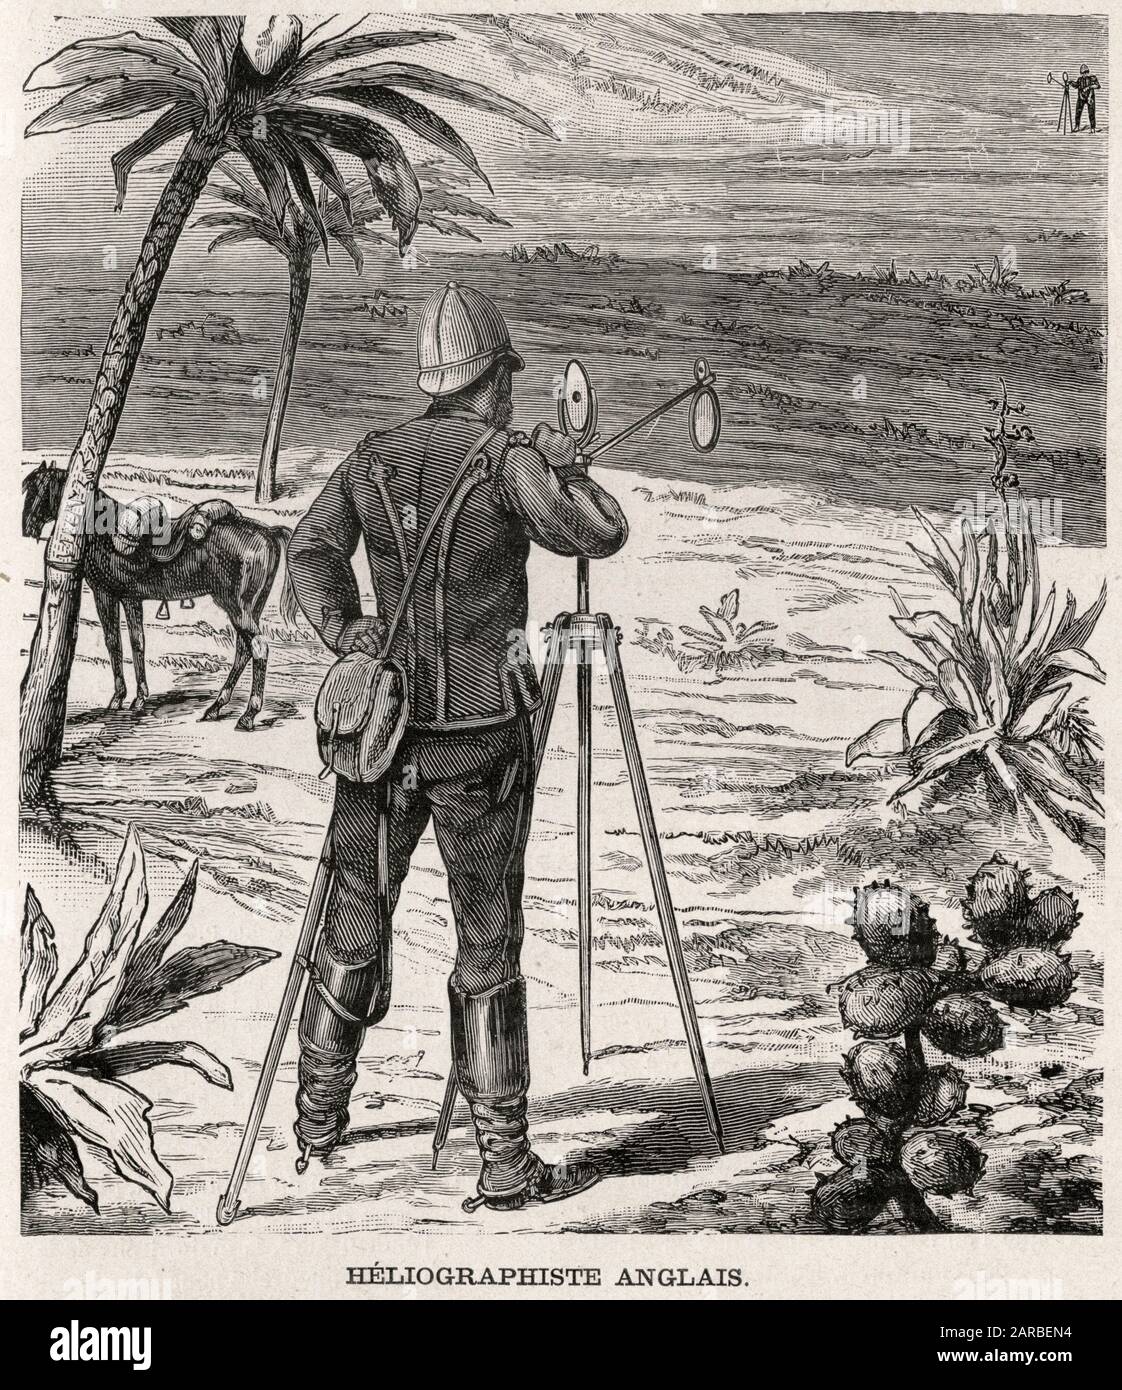 Heliografía utilizada en el ejército británico en África, probablemente durante la Guerra de los Boer (1899-1902). La heliografía es un telégrafo inalámbrico que señala por destellos de luz solar (generalmente usando el código Morse) reflejado por un espejo. Fecha: C.1900 Foto de stock